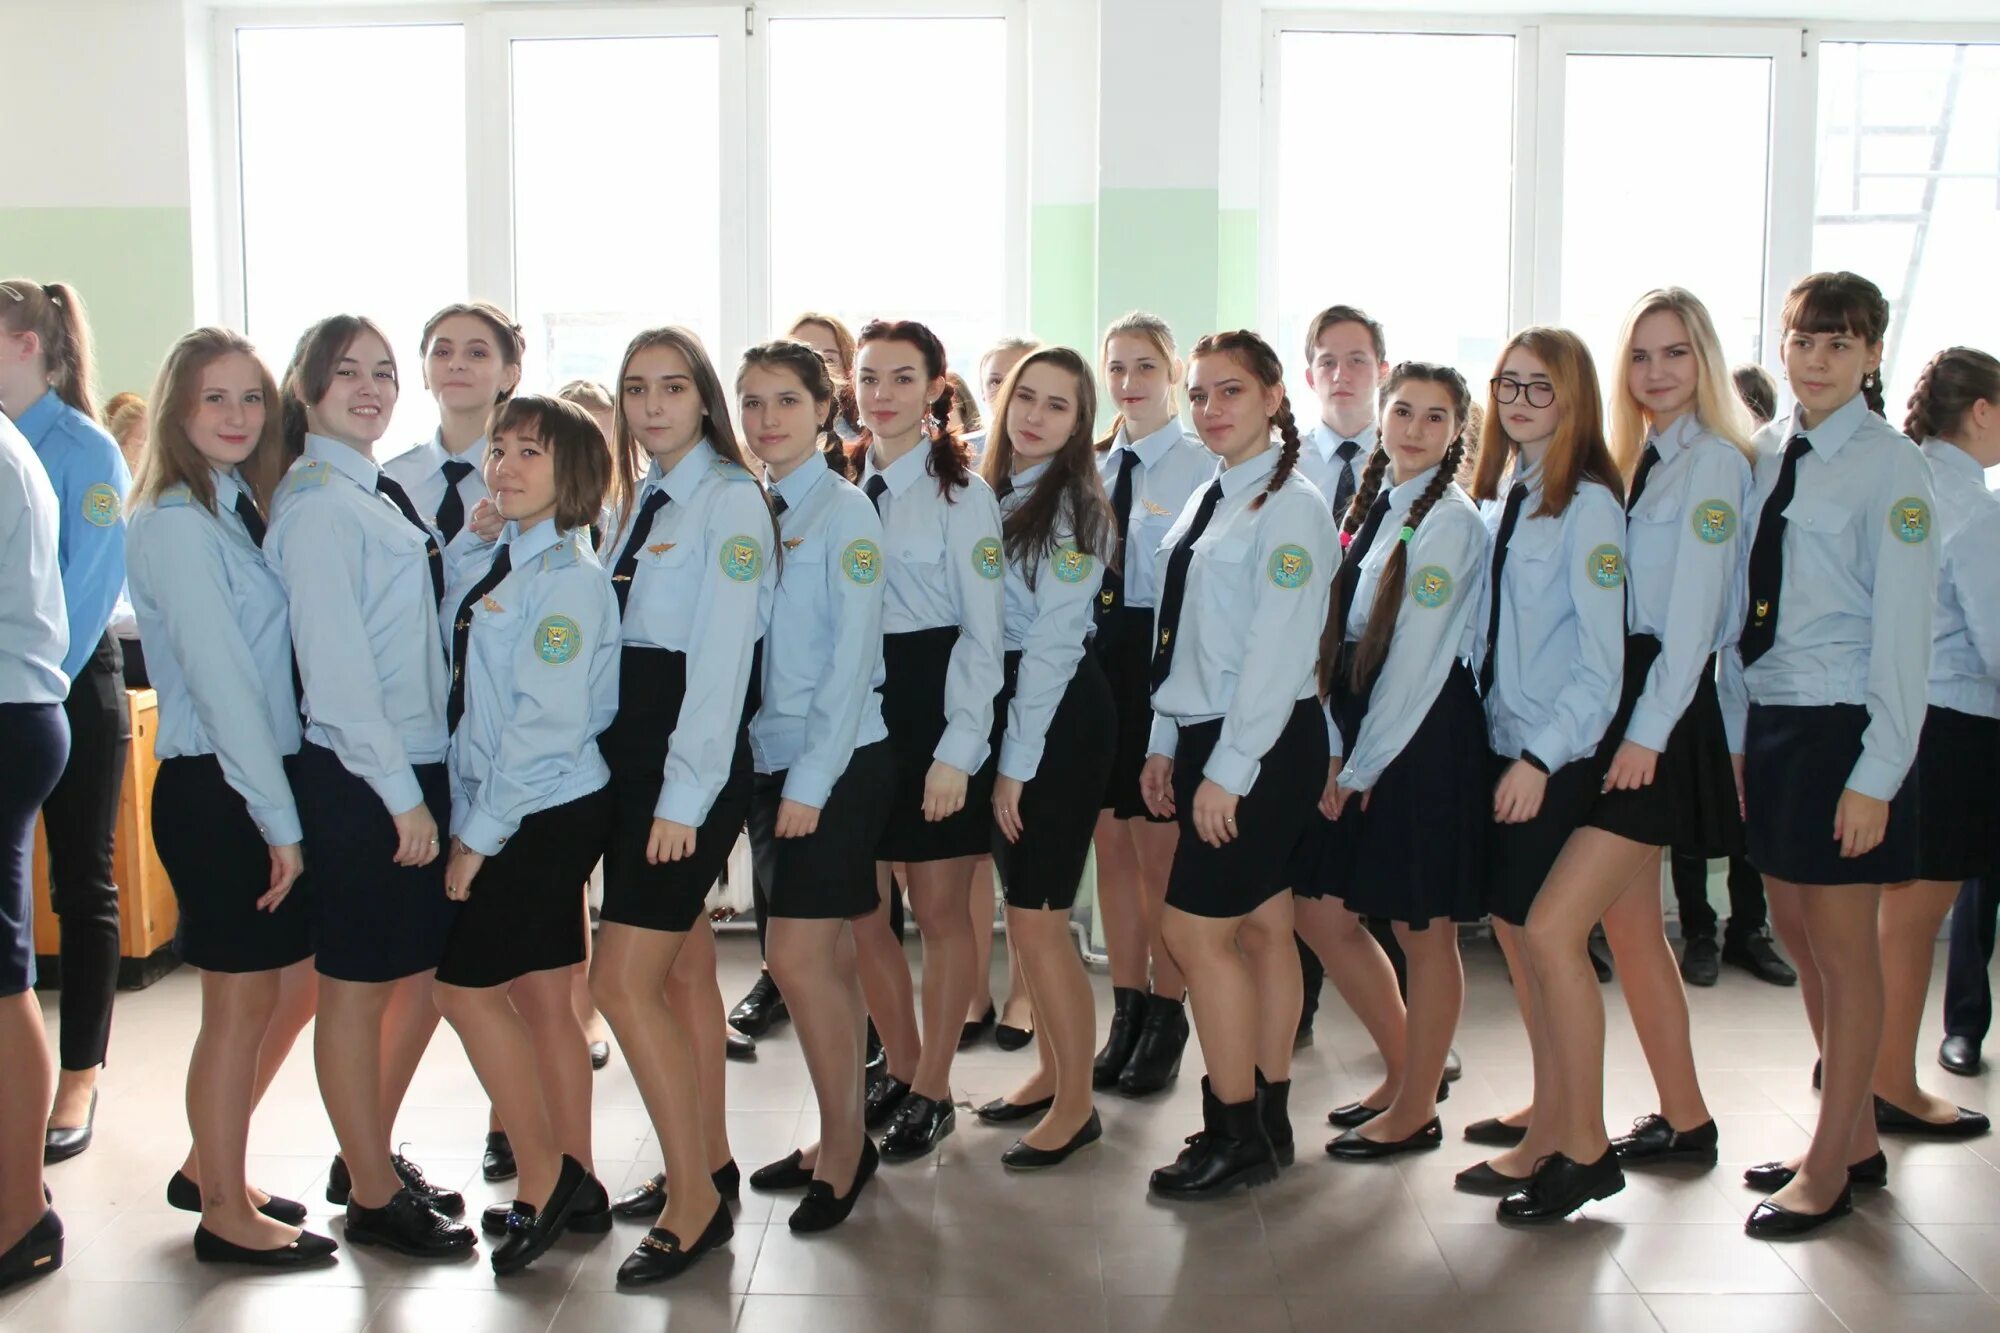 Группа студентов из екатеринбурга занимается. Студент звучит гордо. Студенты Екатеринбург фото.